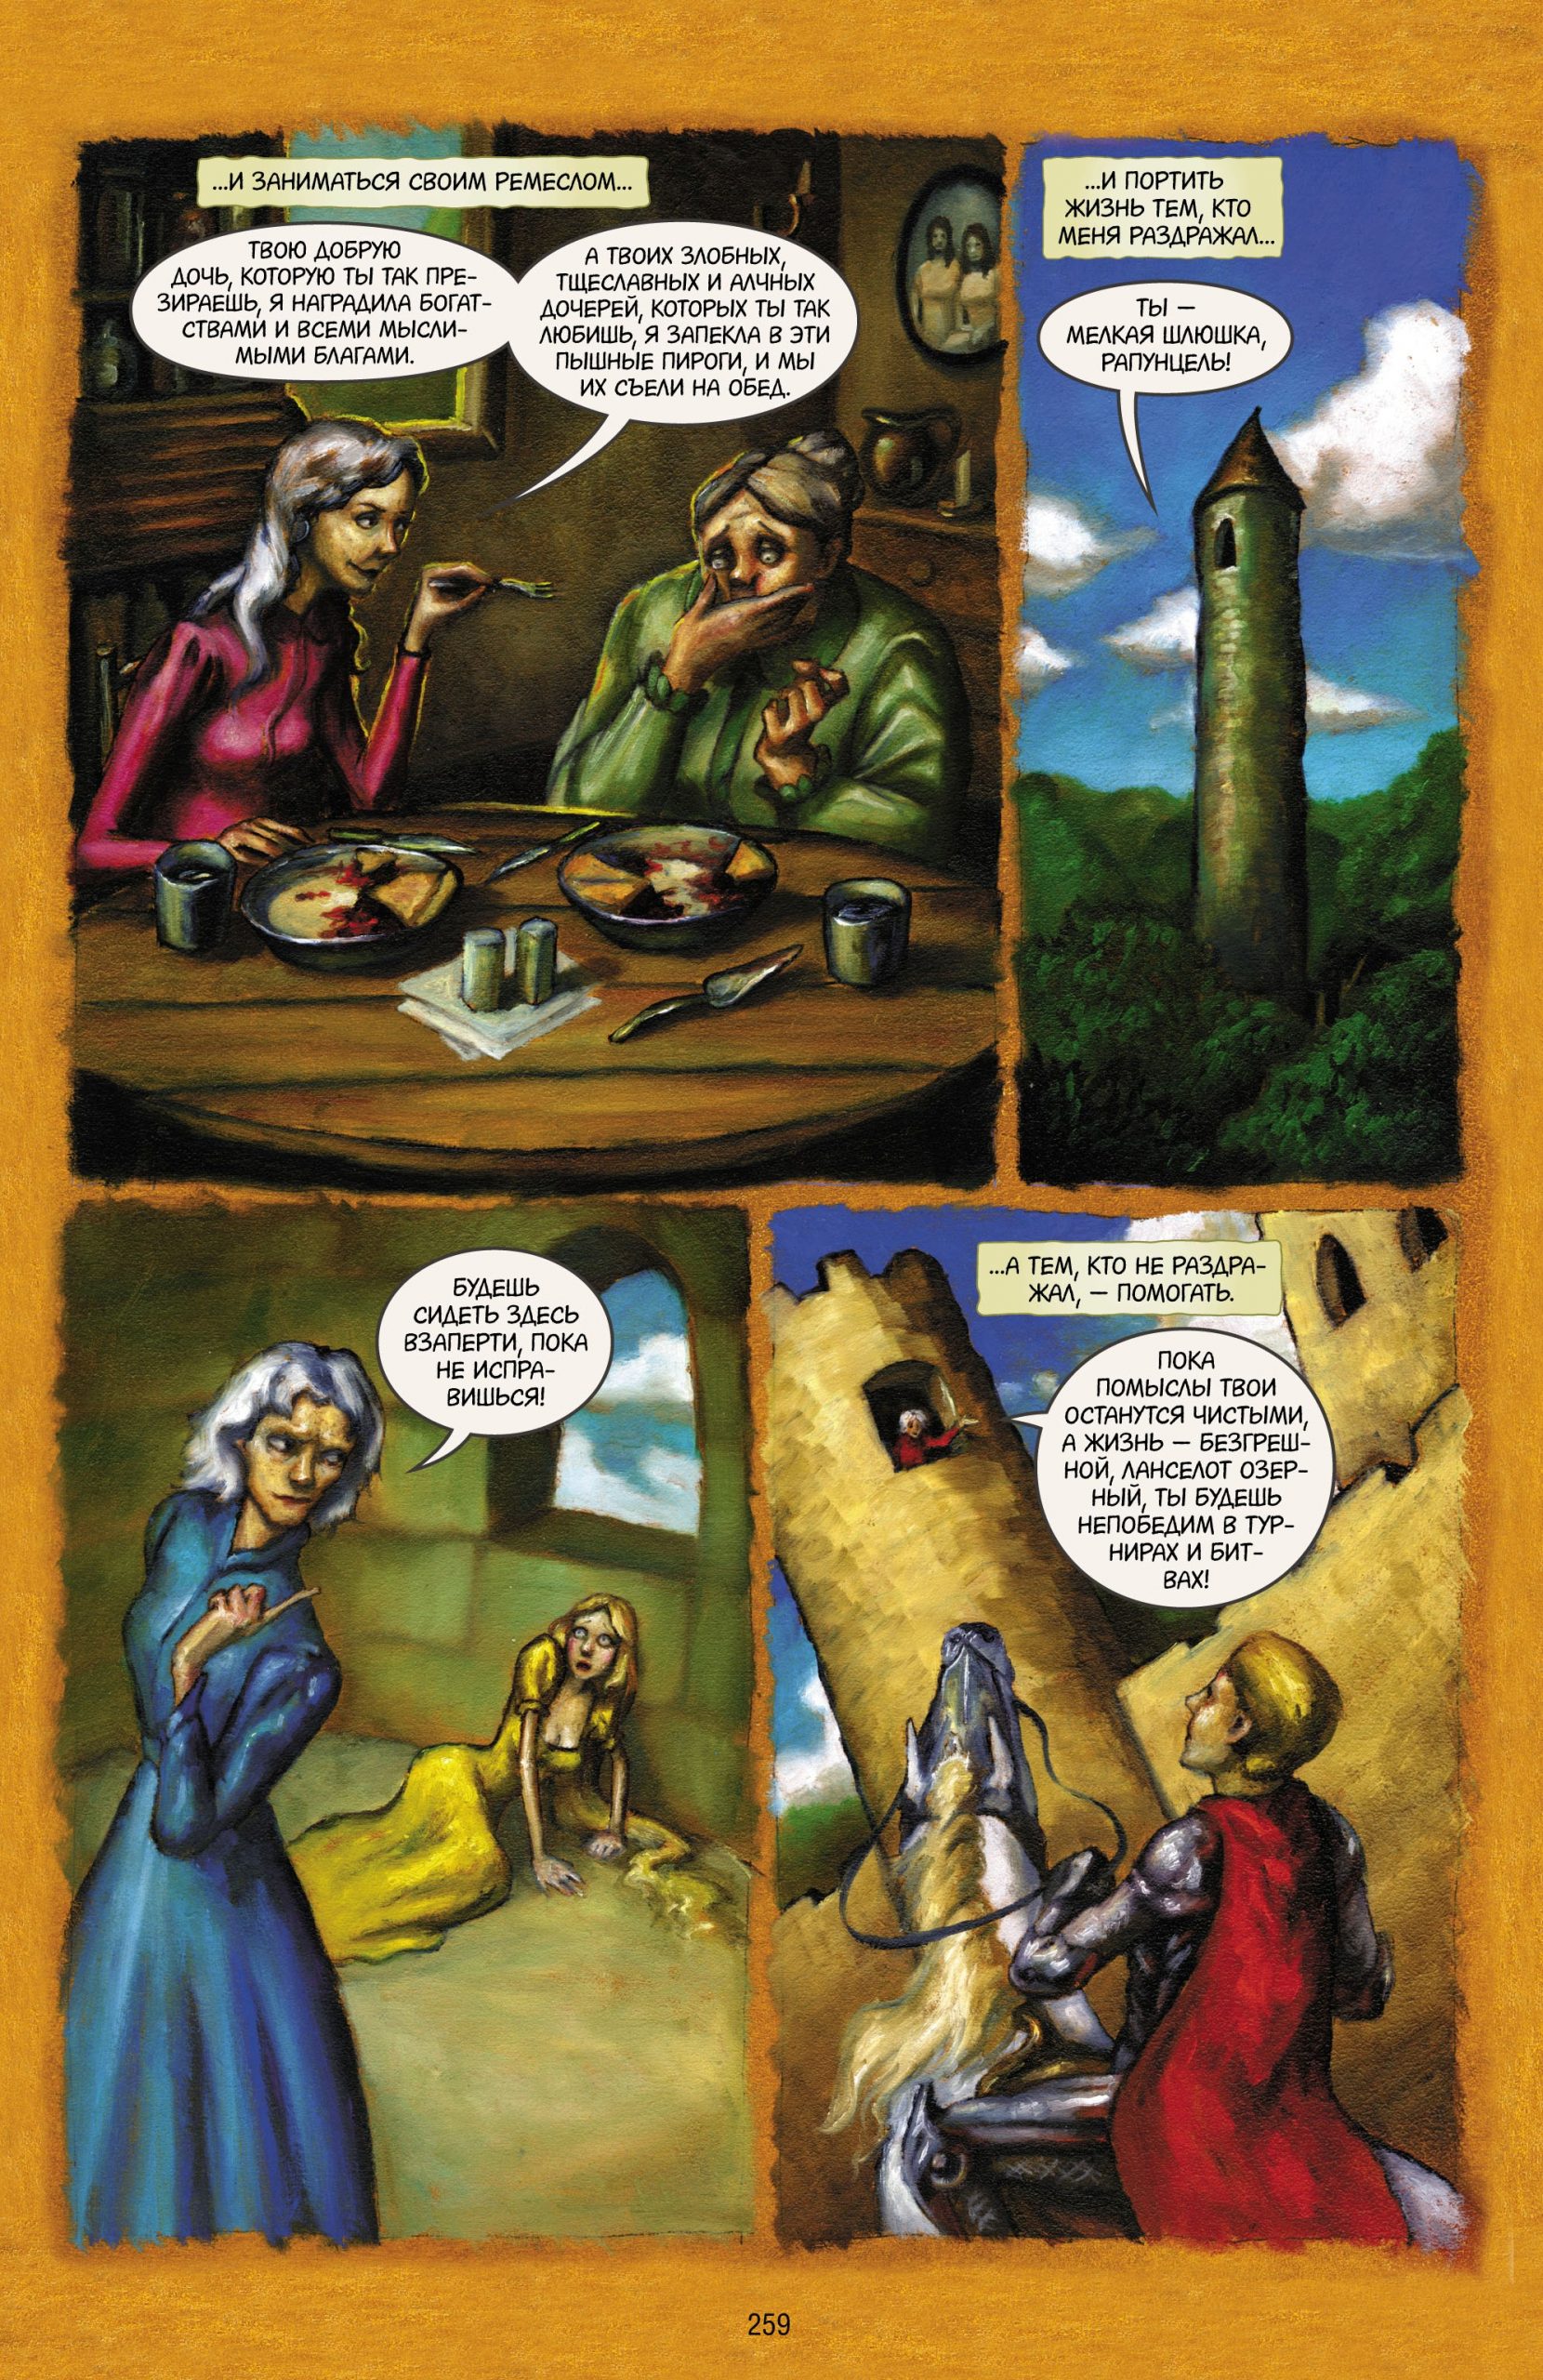 Читаем комикс «Сказки: Диаспора»: жестокие сказки о древней ведьме 7